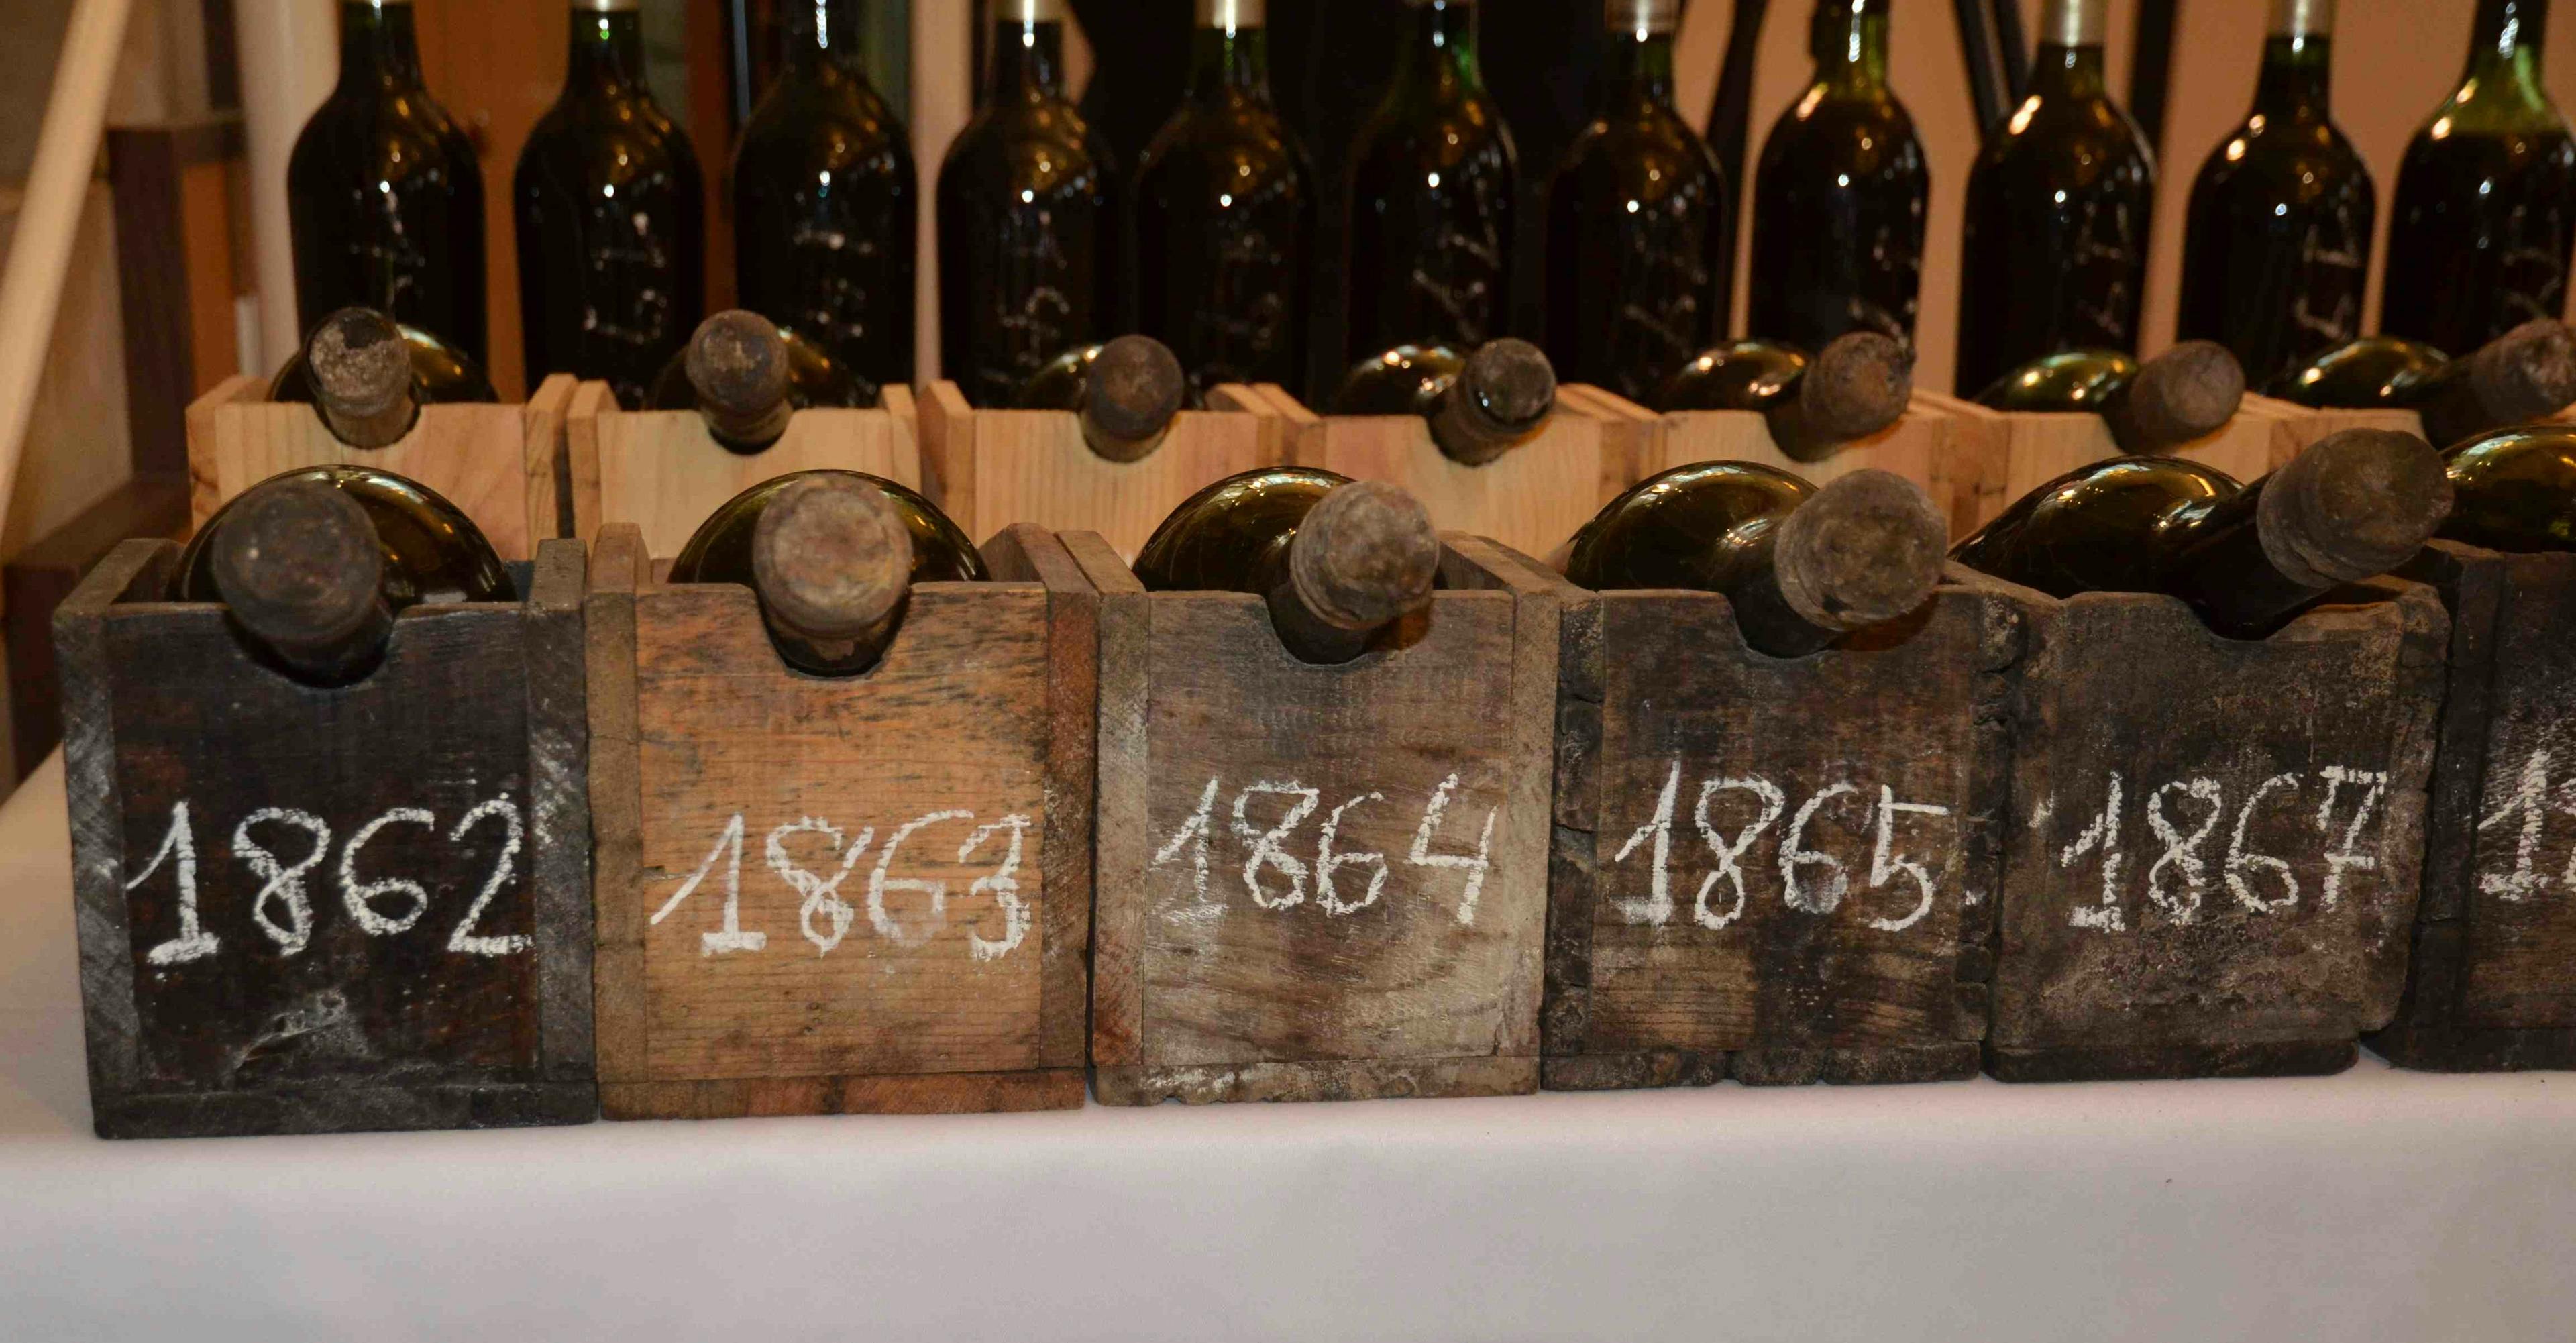 150 årgångar Rioja - Marqués de Riscal